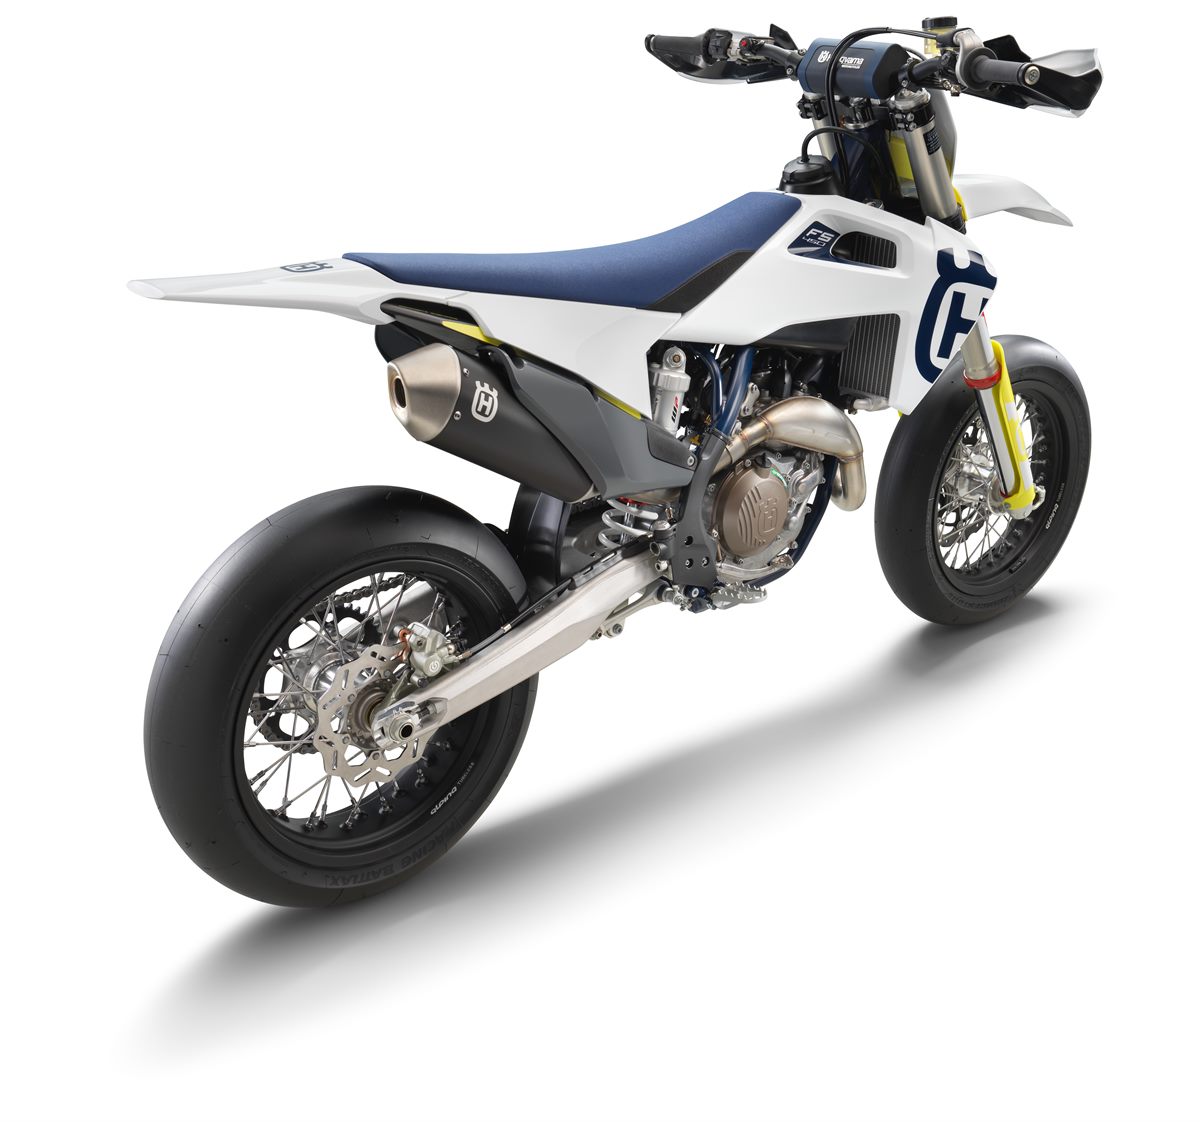 HUSQVARNA MOTORCYCLES’ MY20 FS 450